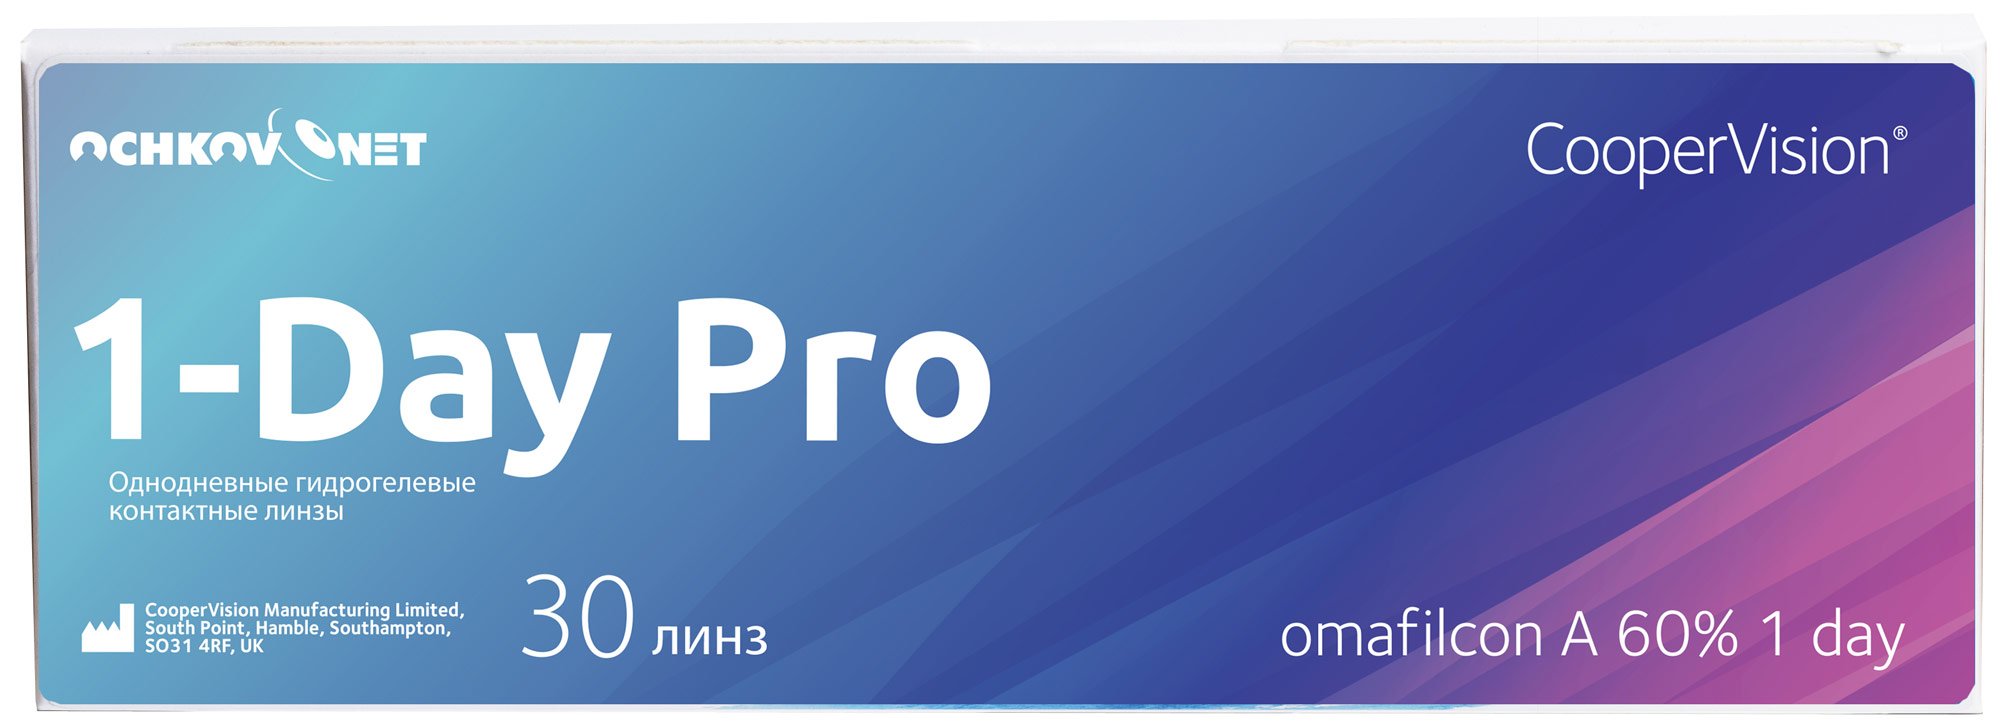 Купить Контактные линзы Ochkov.Net 1-Day Pro 30 линз 8.7, -11